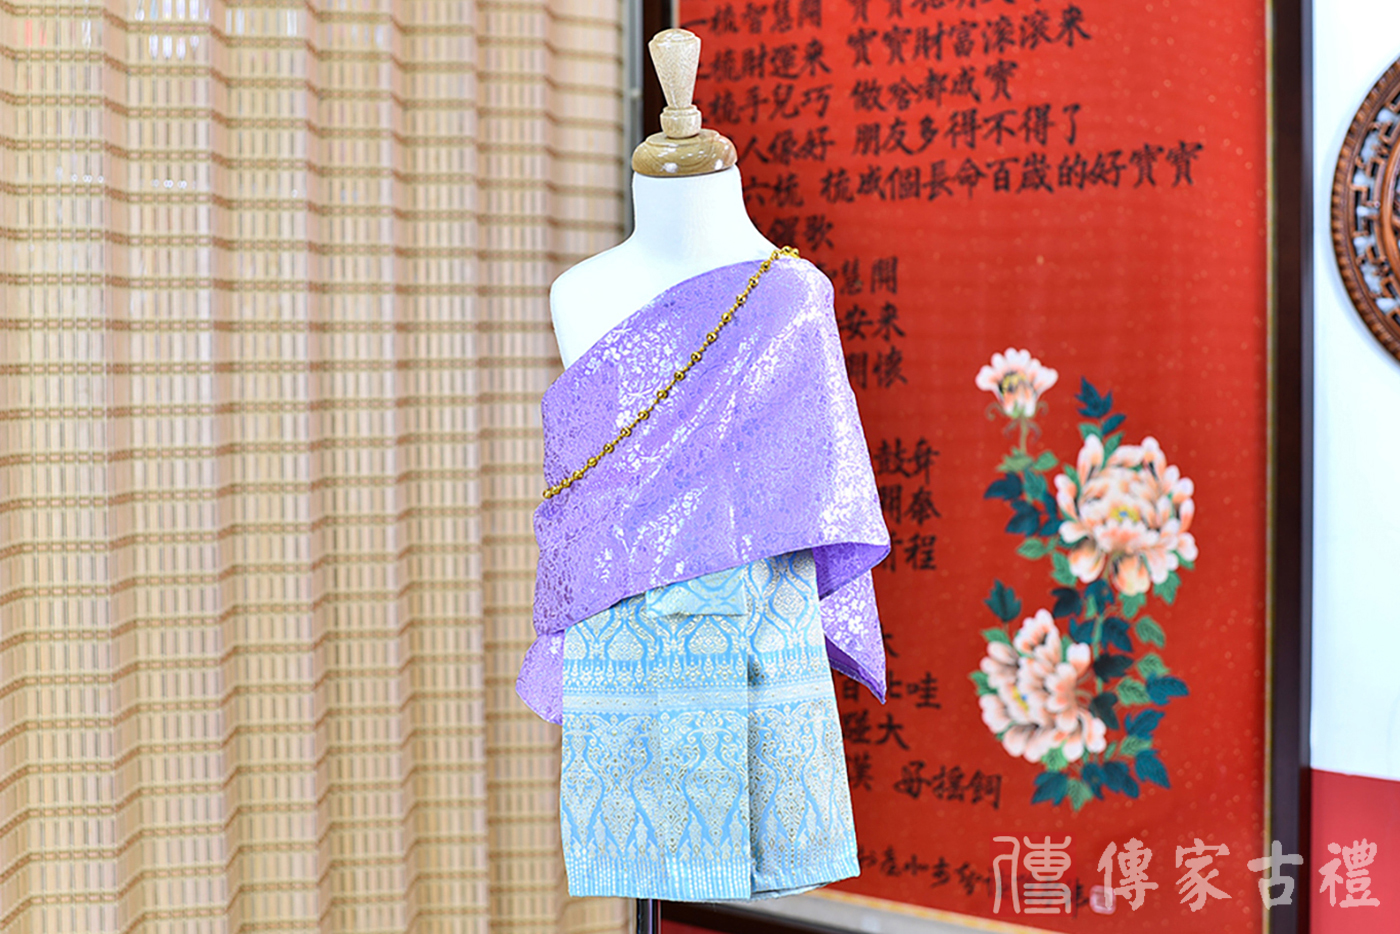 2024-02-23小孩皇室泰服古裝禮服。淺紫色的紋路披肩上衣搭配藍色泰國圖案裙裝的泰式古裝禮服。照片集